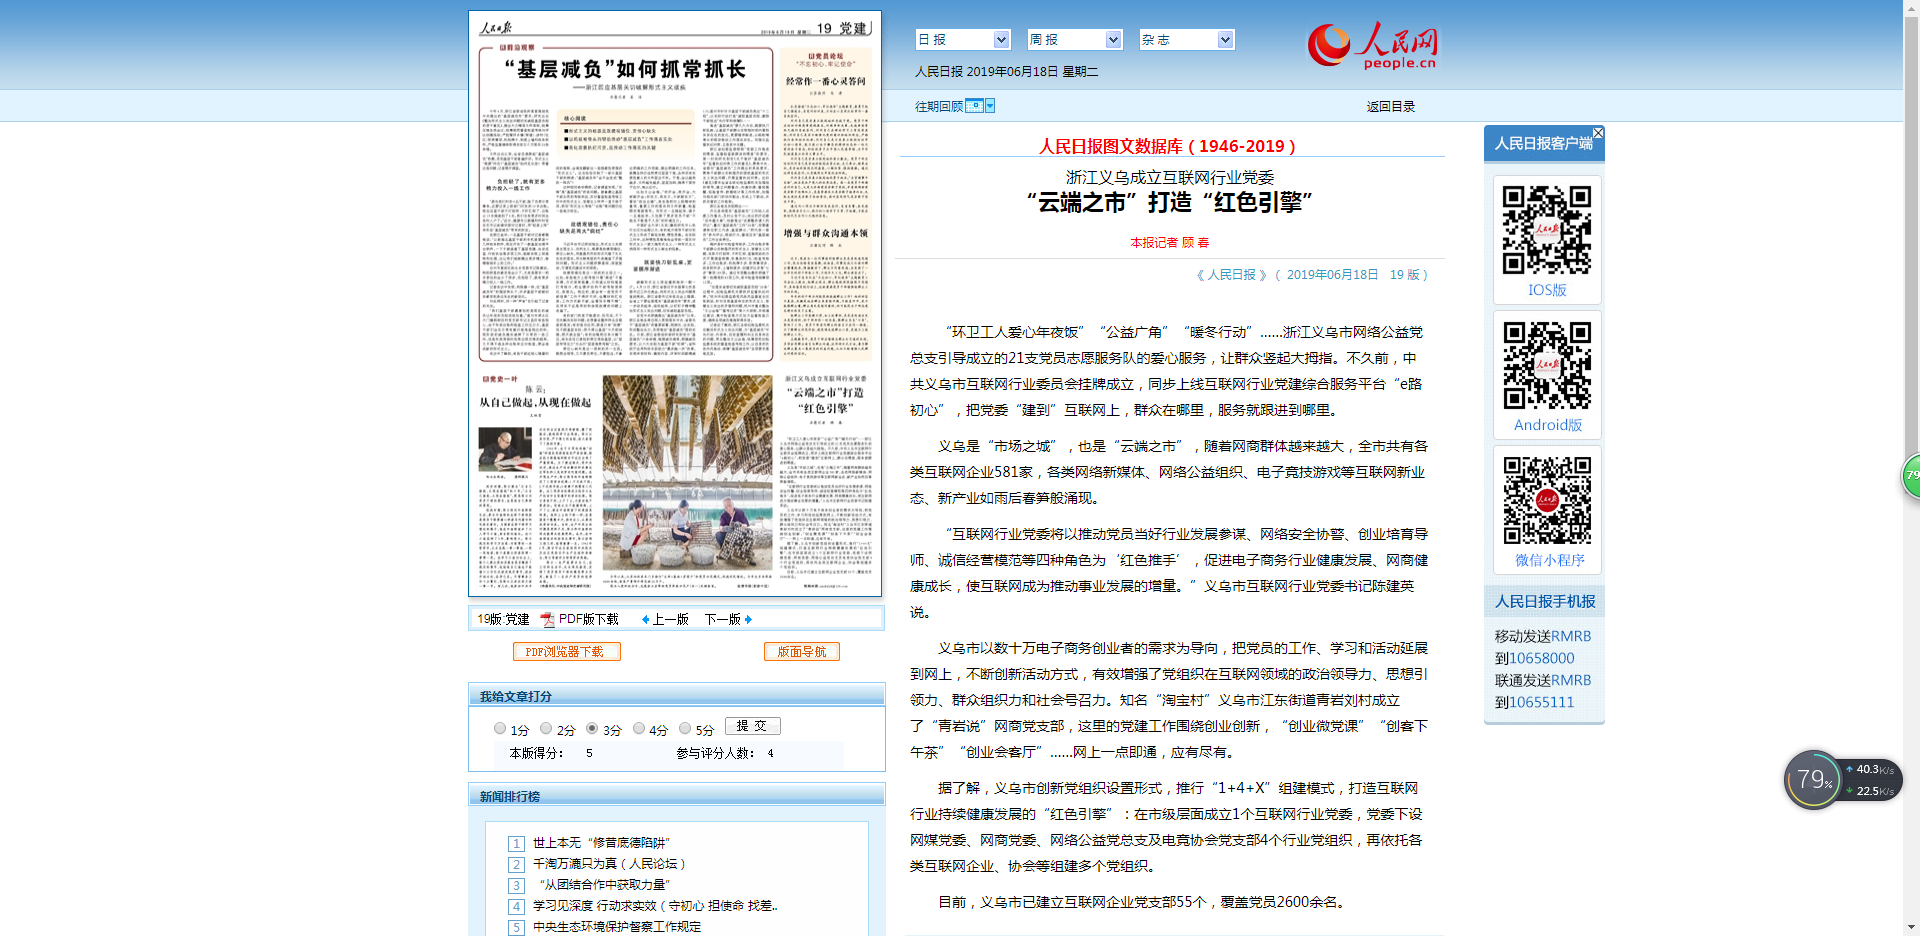 人民日报：浙江义乌成立互联网行业党委 “云端之市”打造“红色引擎”